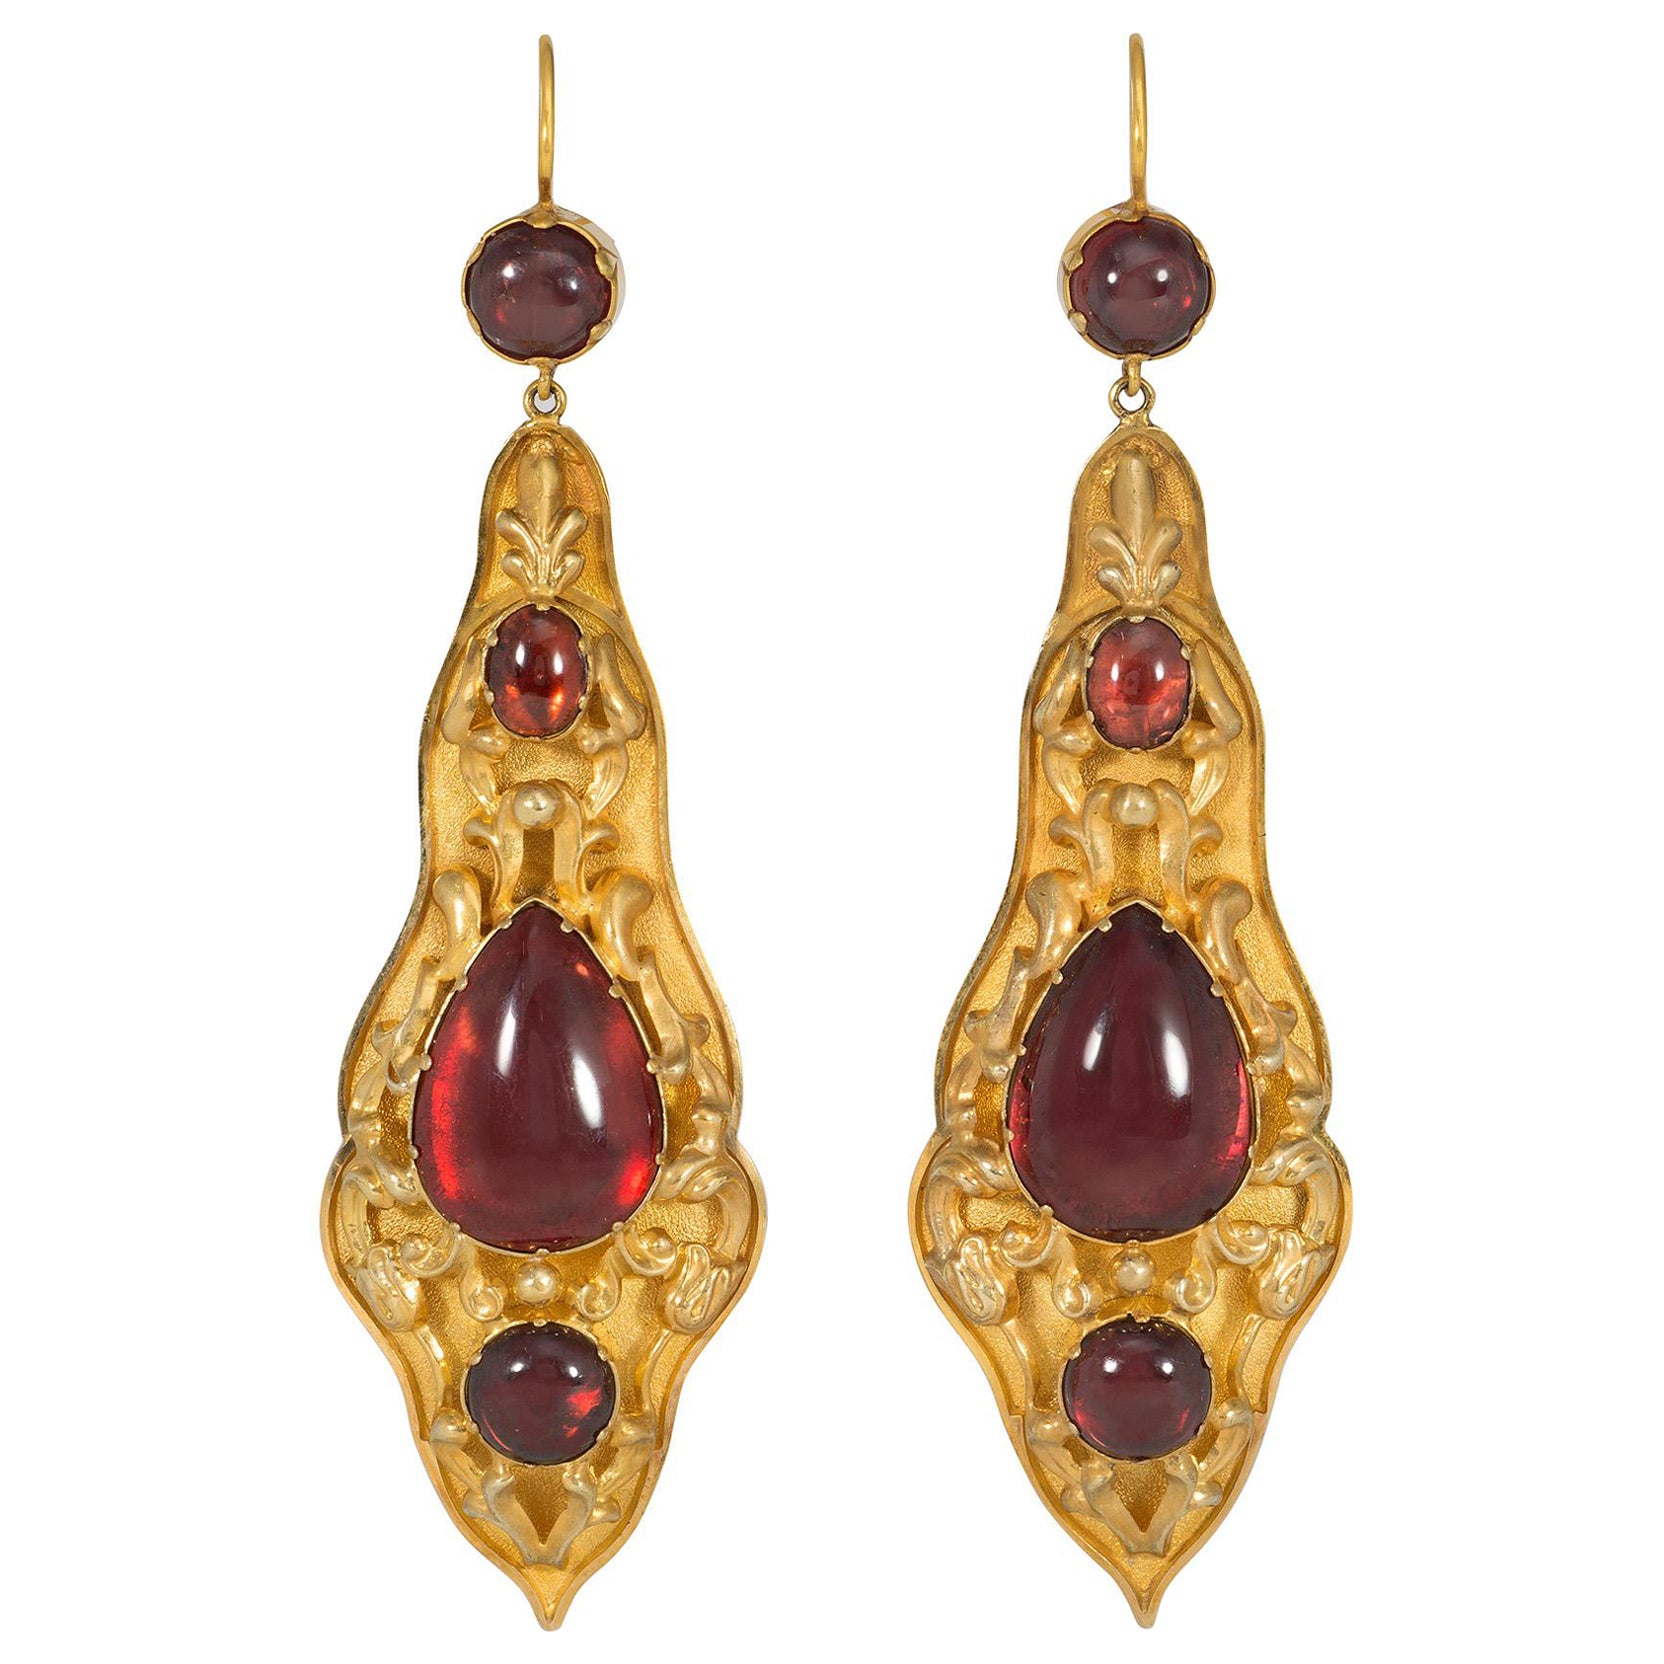 Antique Gold and Cabochon Garnet Pendant Earrings with Repoussé Decoration For Sale